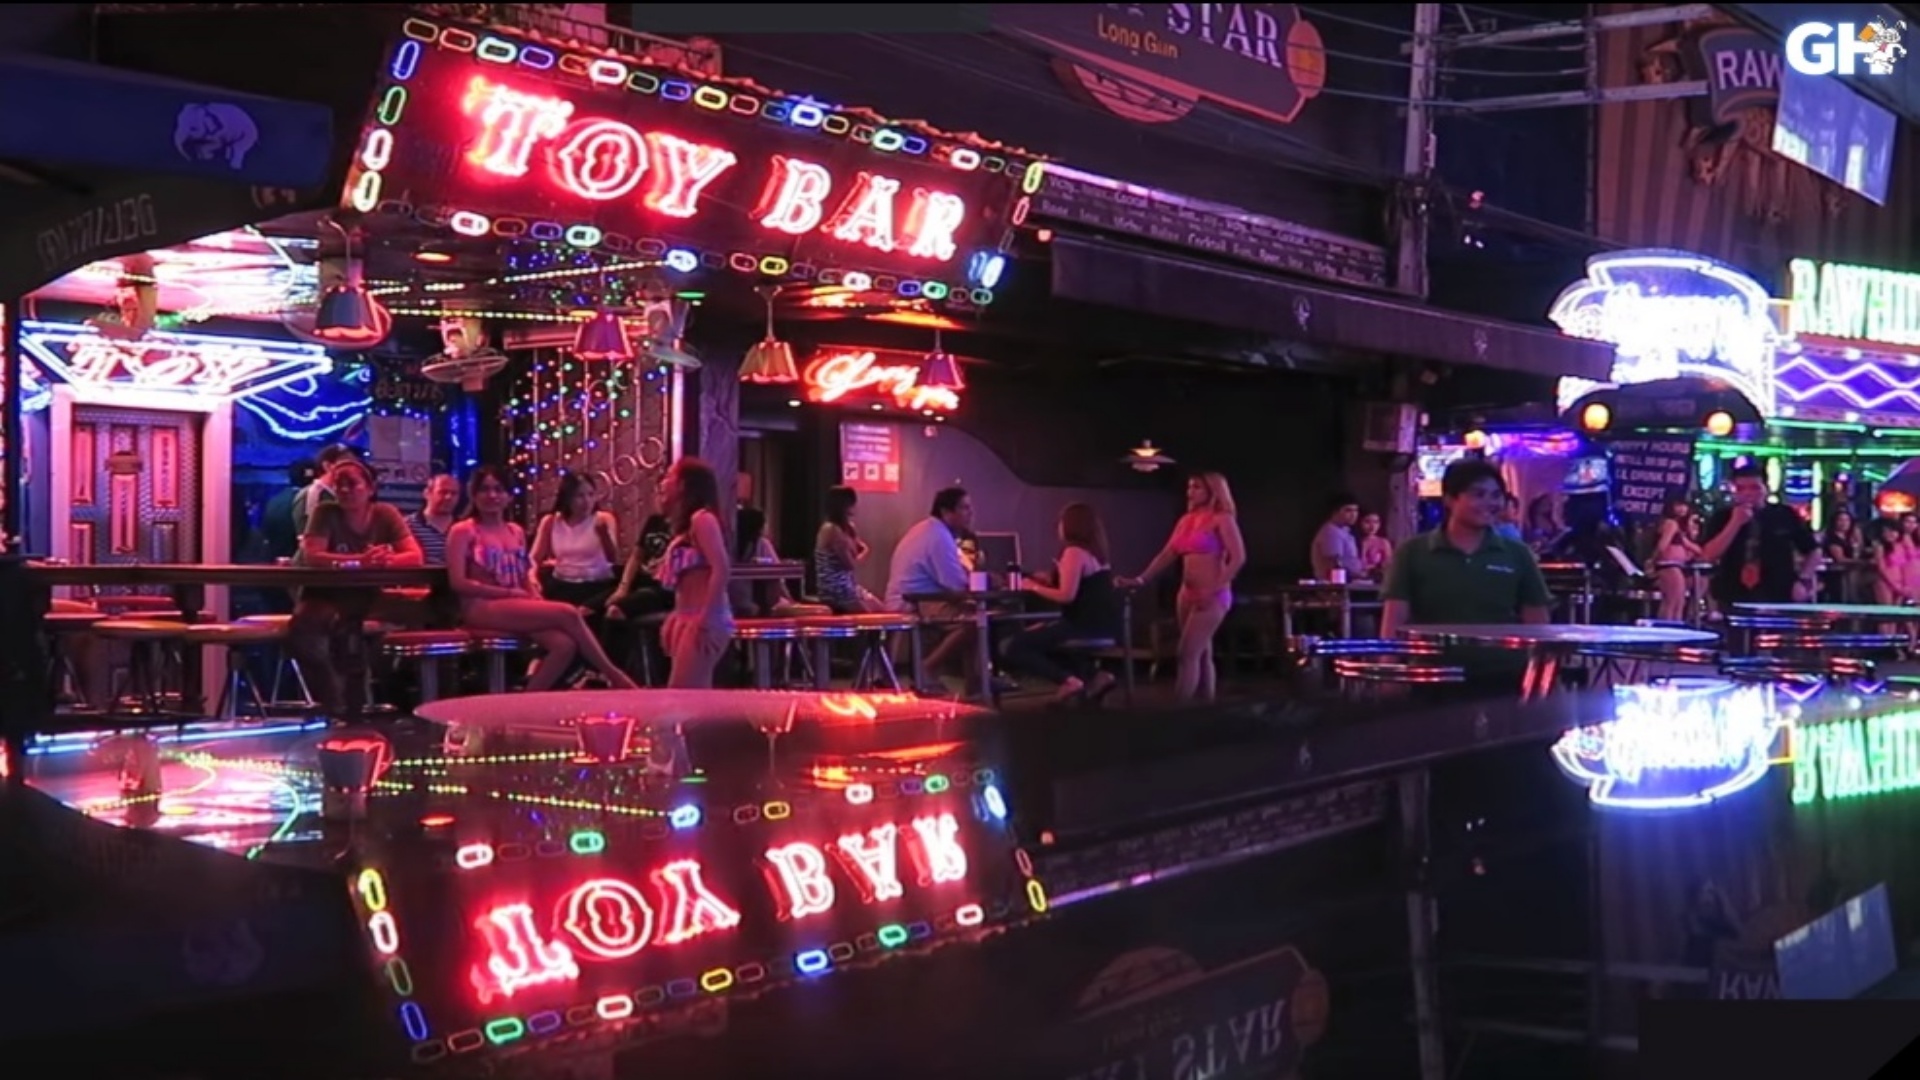 Bangkok bj bar